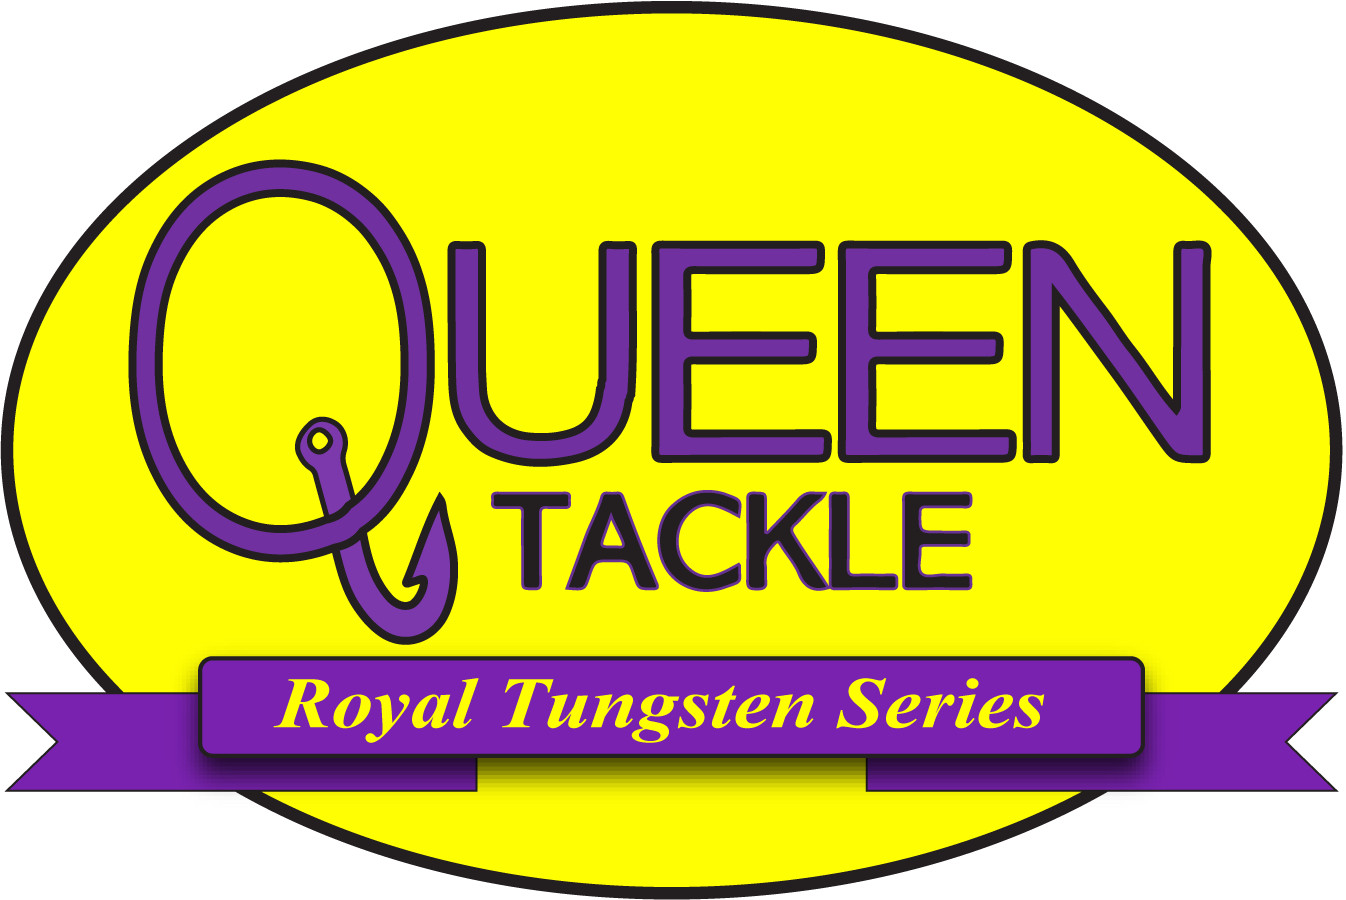 Queen Tackle